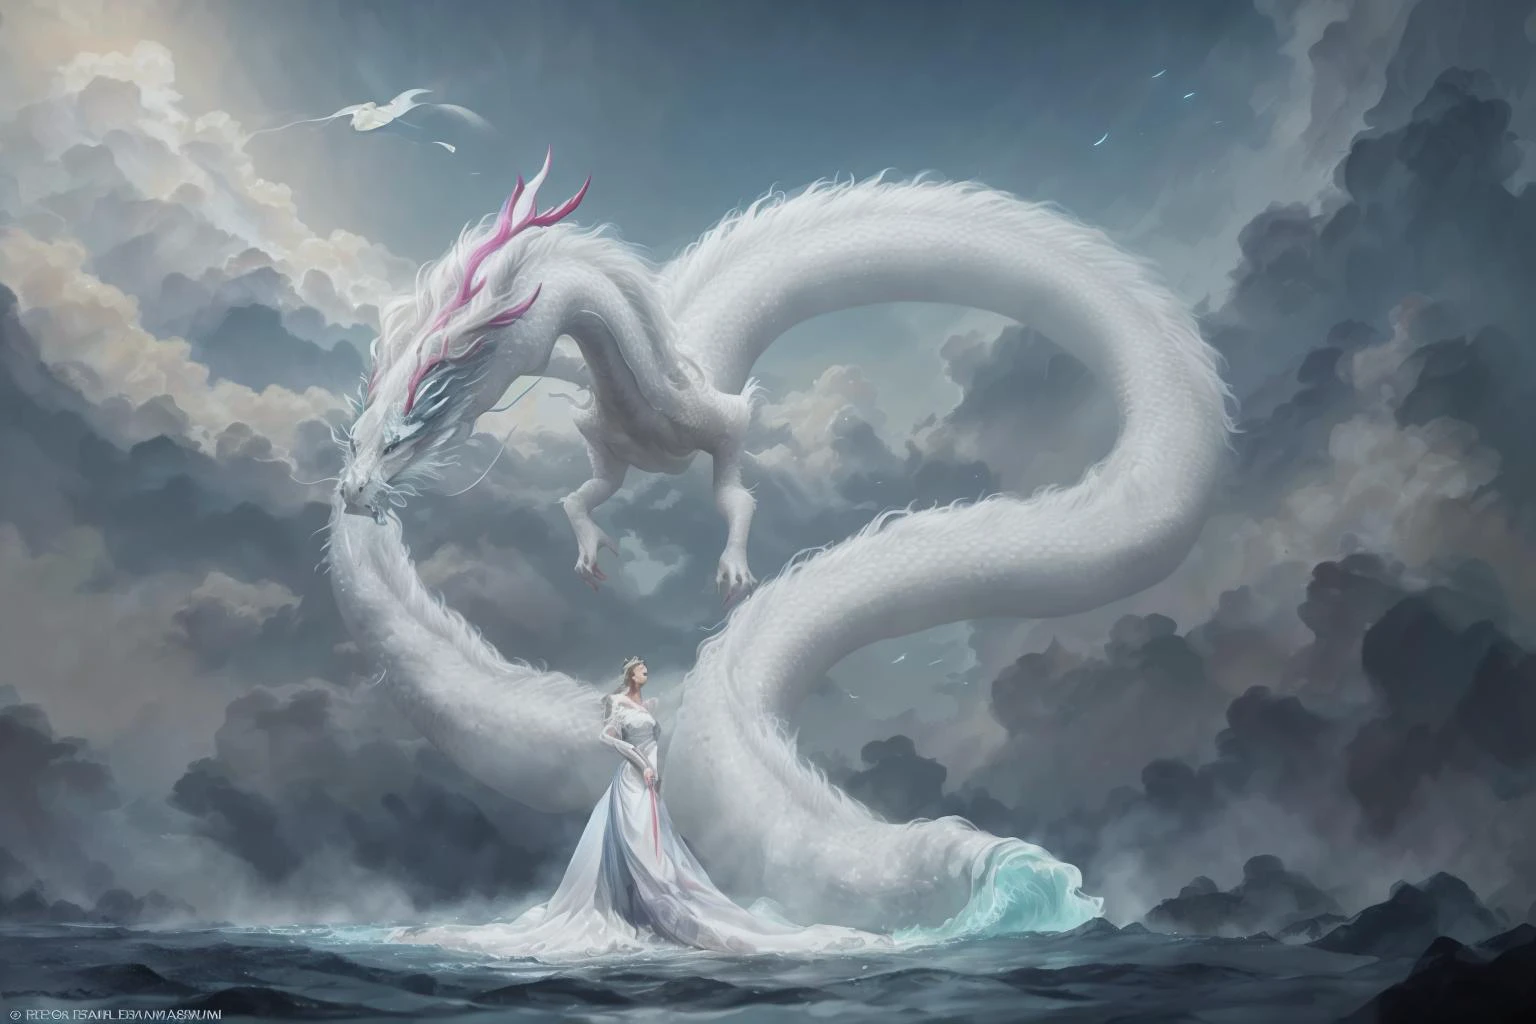 En una imagen cautivadora, Una mujer elegante vestida con un vestido chino blanco se desliza por el cielo encima de un dragón chino mítico.. Mientras atraviesan los cielos, su vestido fluido y las escamas iridiscentes del dragón crean una visión fascinante de armonía y belleza de otro mundo.. 
HDR, (photorealism, Calidad de obra maestra, mejor calidad), , pureerosface_v1,ulzzang-6500-v1.1,